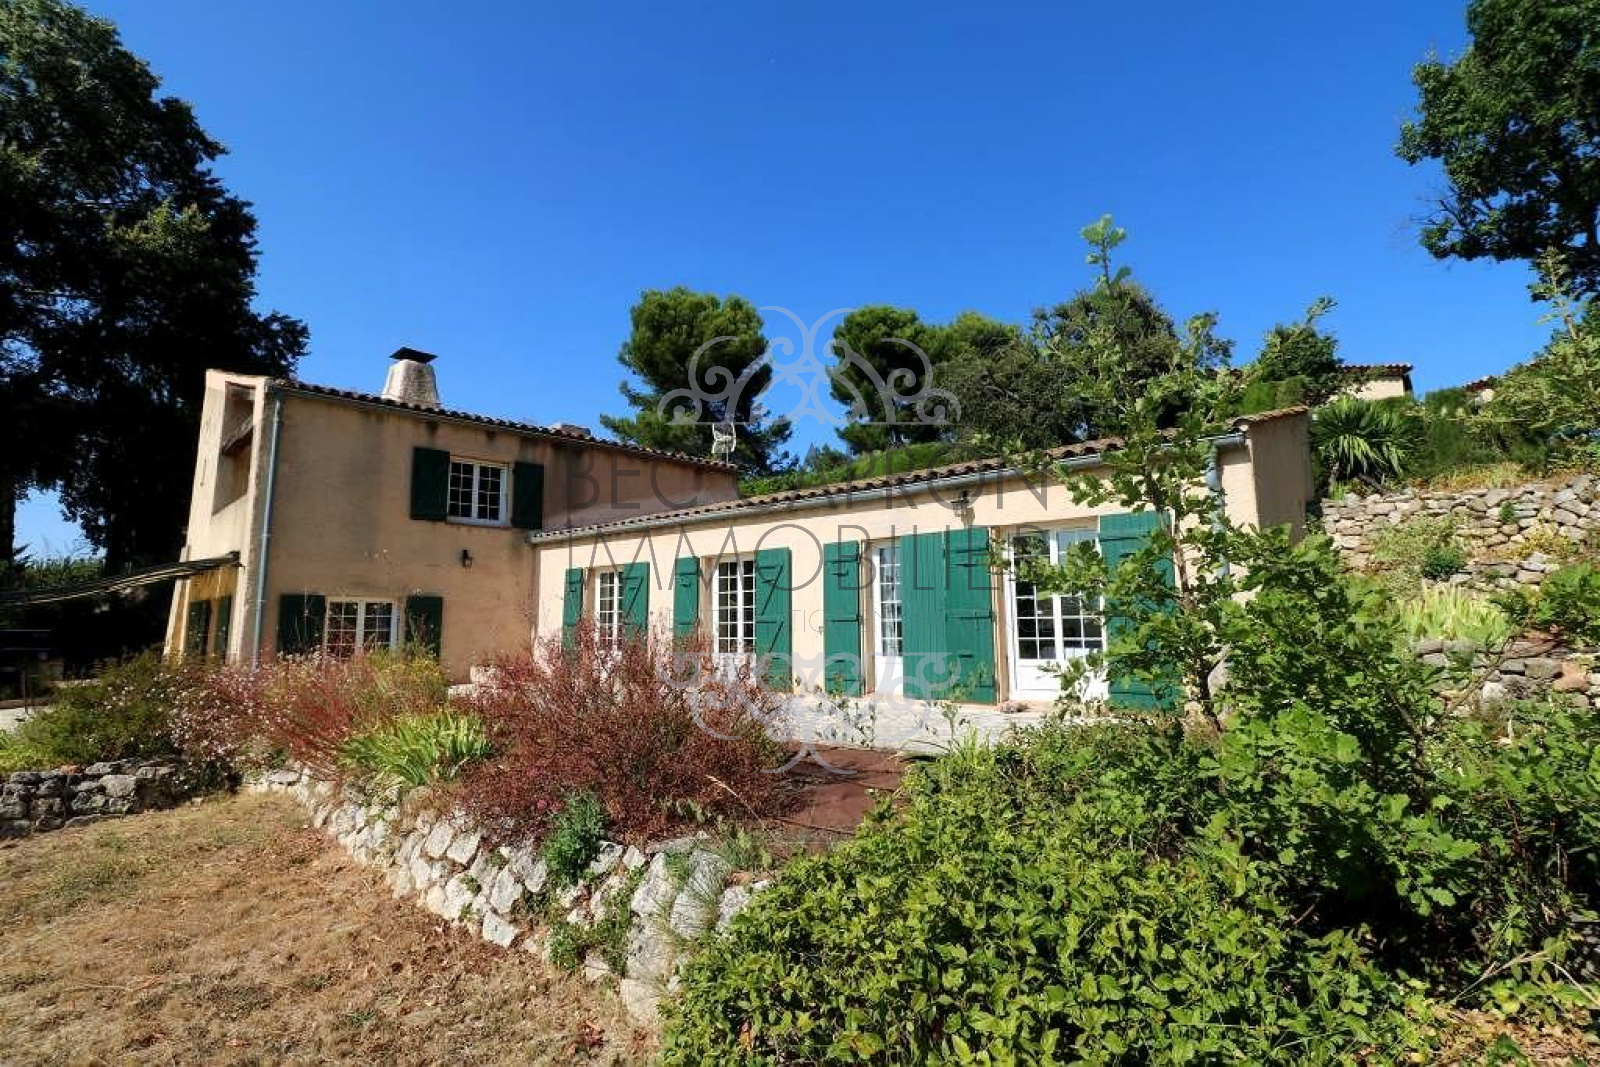 Image_3, Maisons (maison, propriÃ©tÃ©, villa, Mas,bastide, maison de village), Aix-en-Provence, ref :647vm